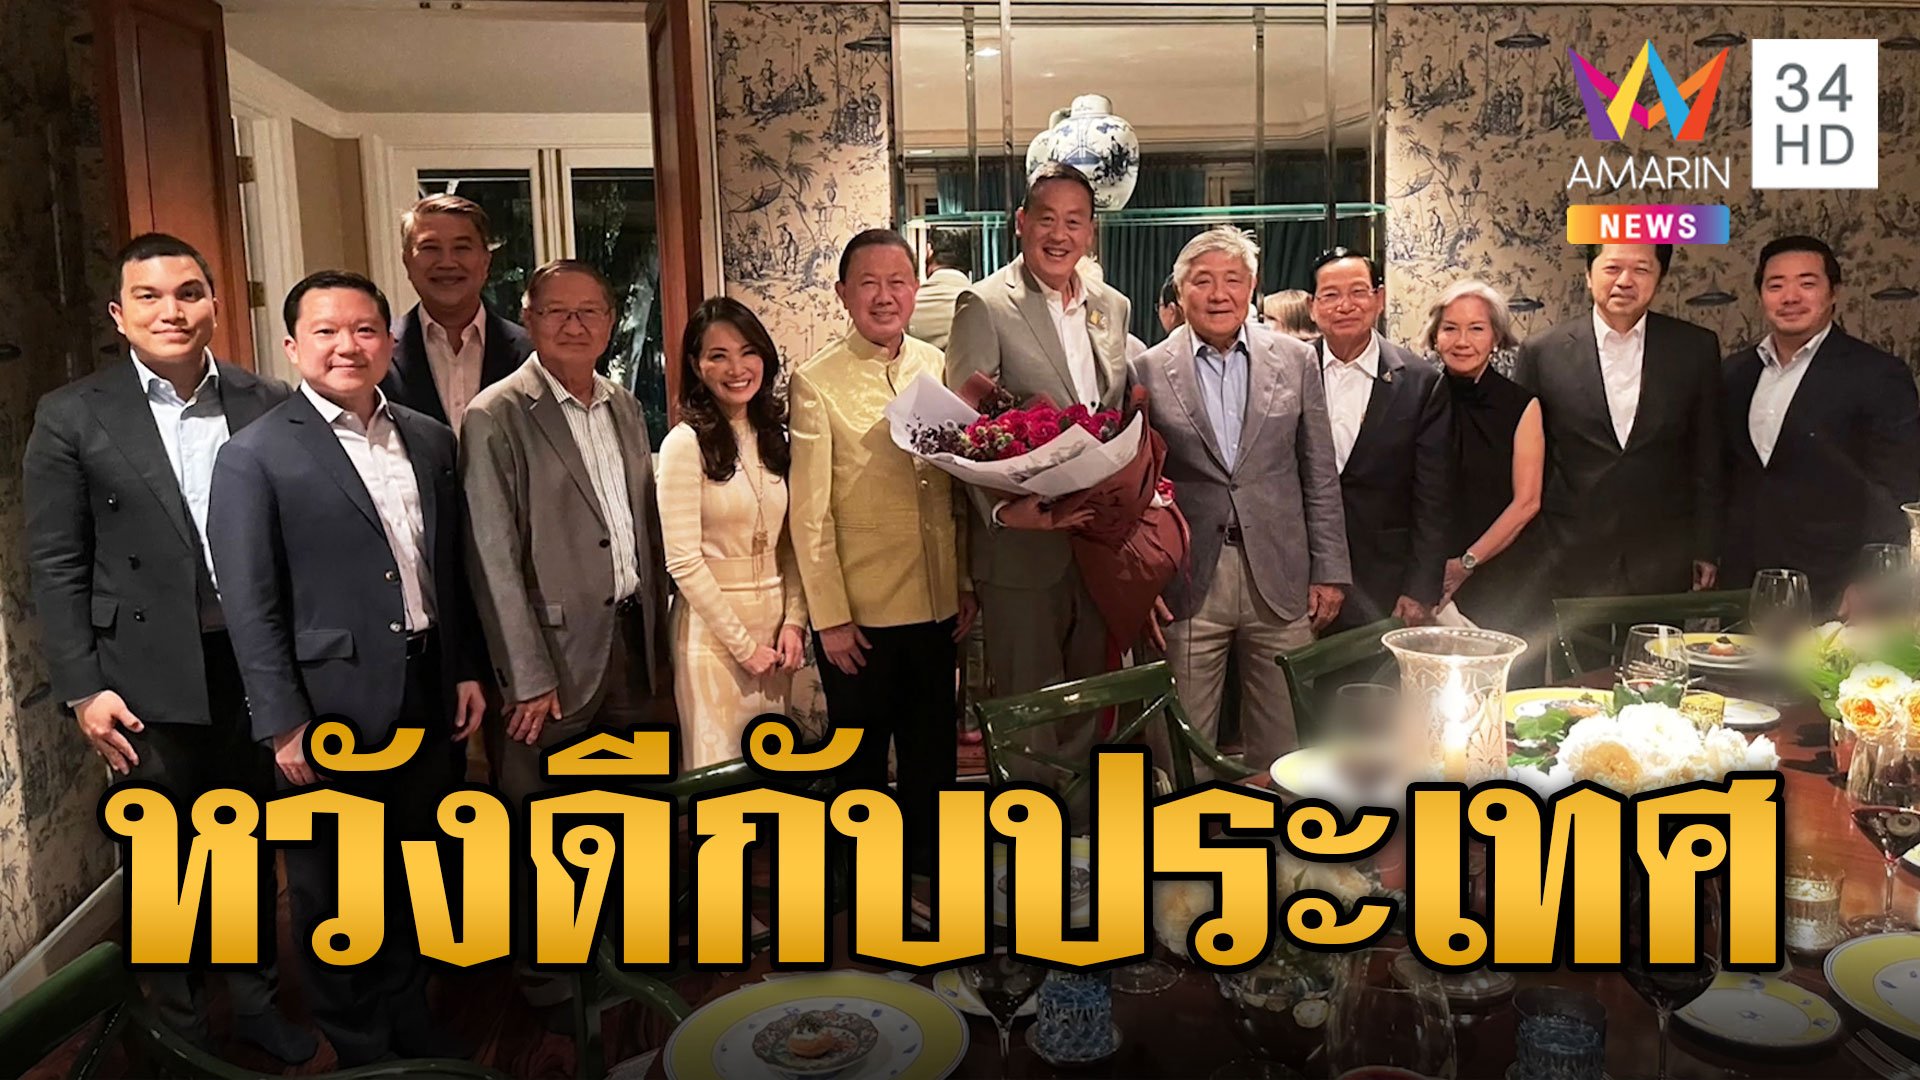 "เศรษฐา" ดินเนอร์มหาเศรษฐีไทย โร่แจงยันไร้ประโยชน์แฝง หวังดีกับประเทศชาติ | ข่าวอรุณอมรินทร์ | 30 ส.ค. 66 | AMARIN TVHD34